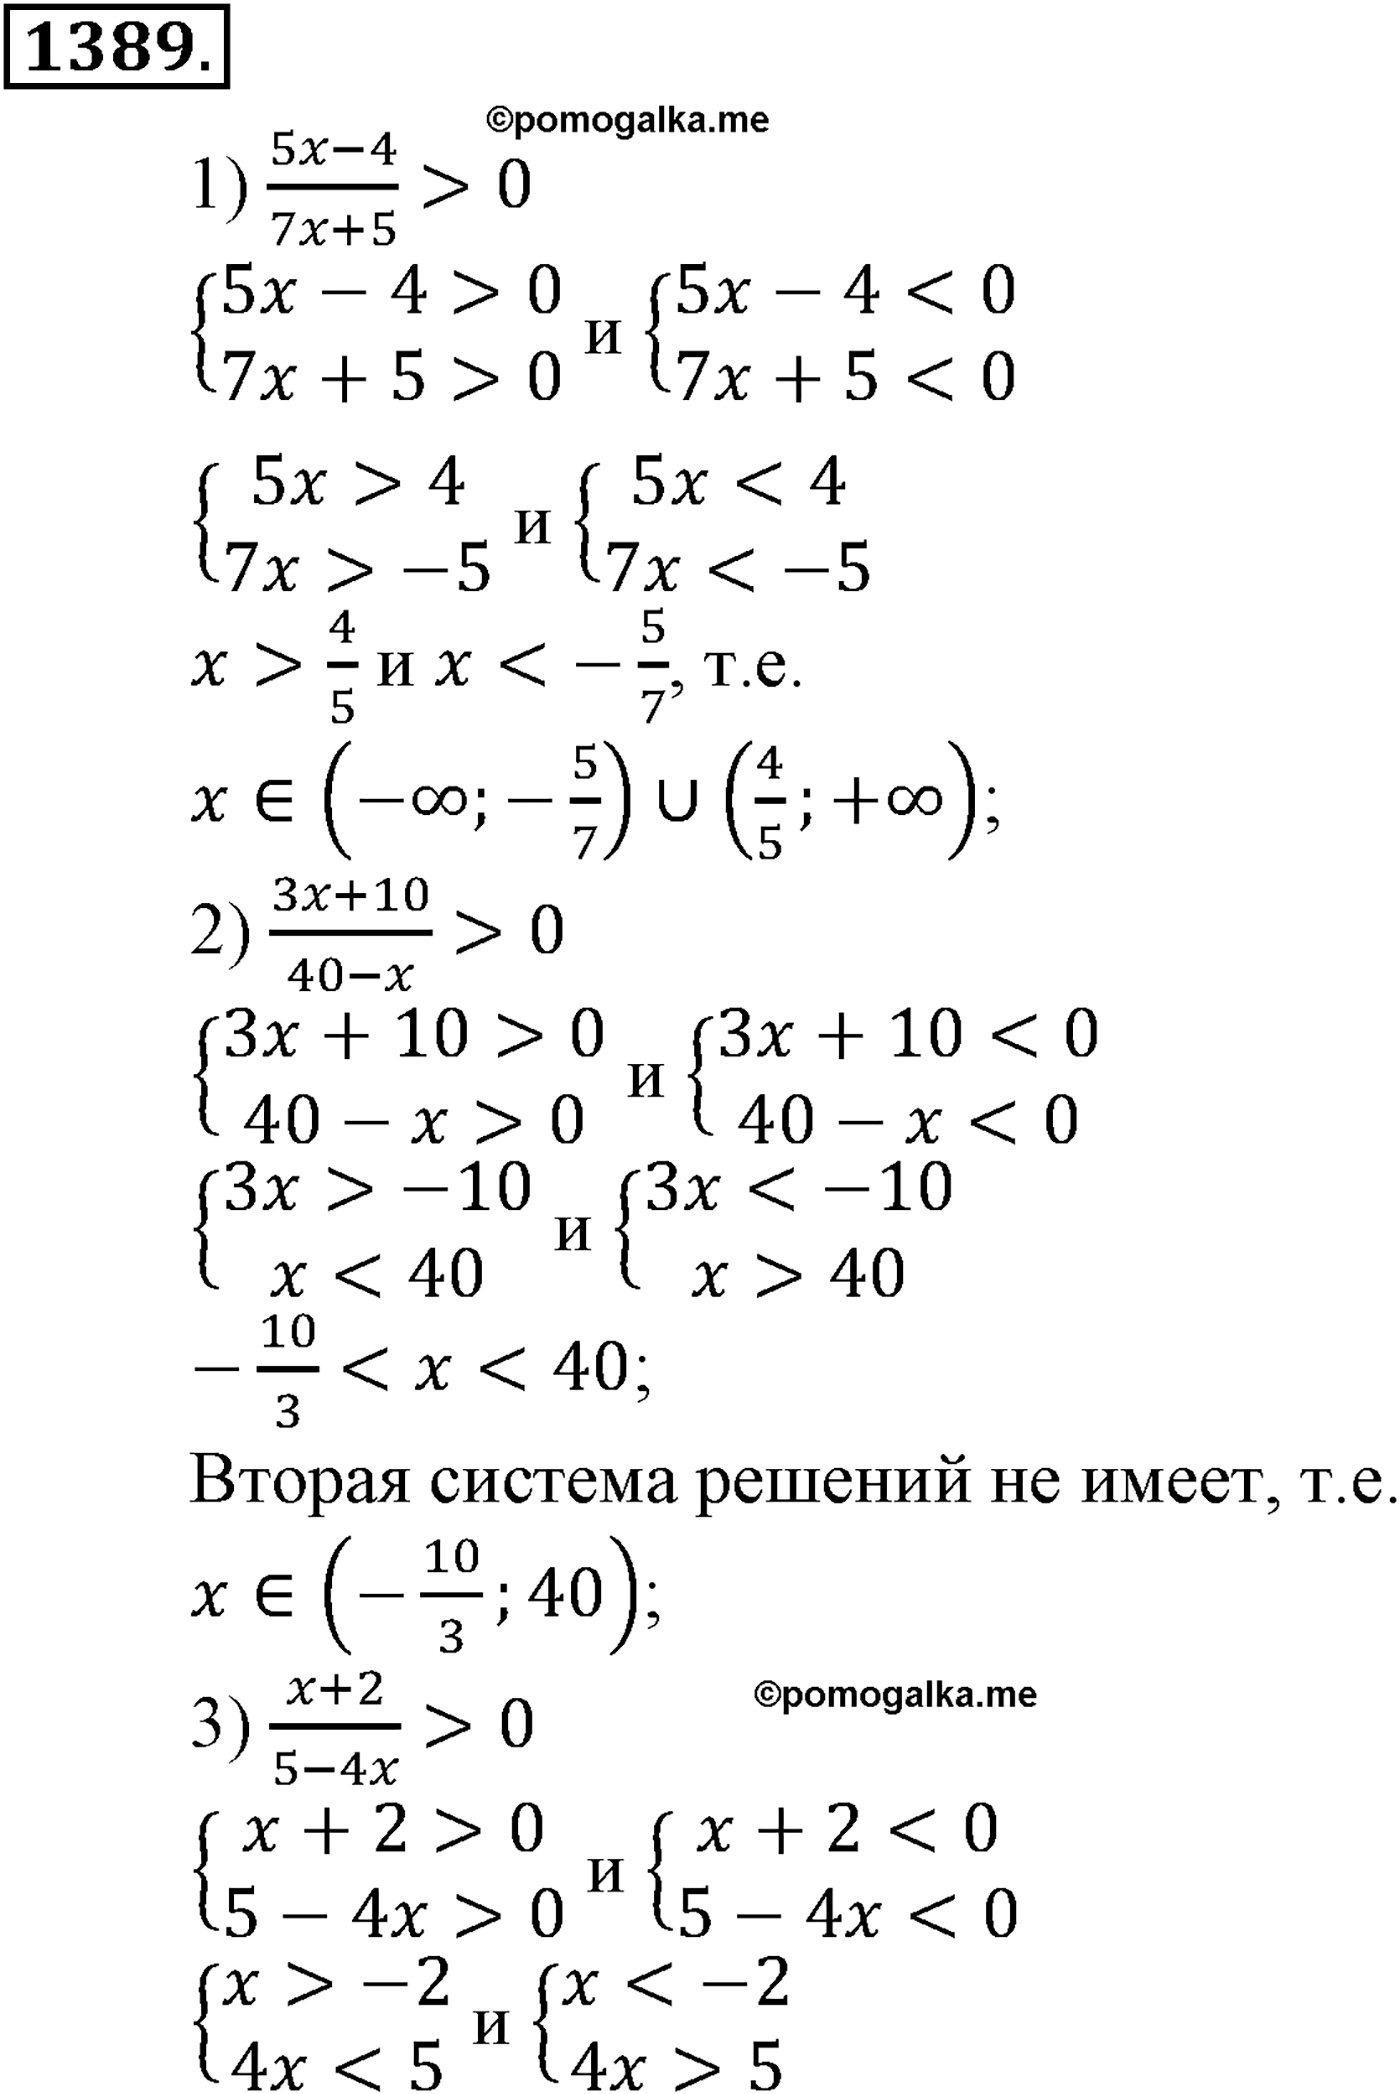 разбор задачи №1389 по алгебре за 10-11 класс из учебника Алимова, Колягина